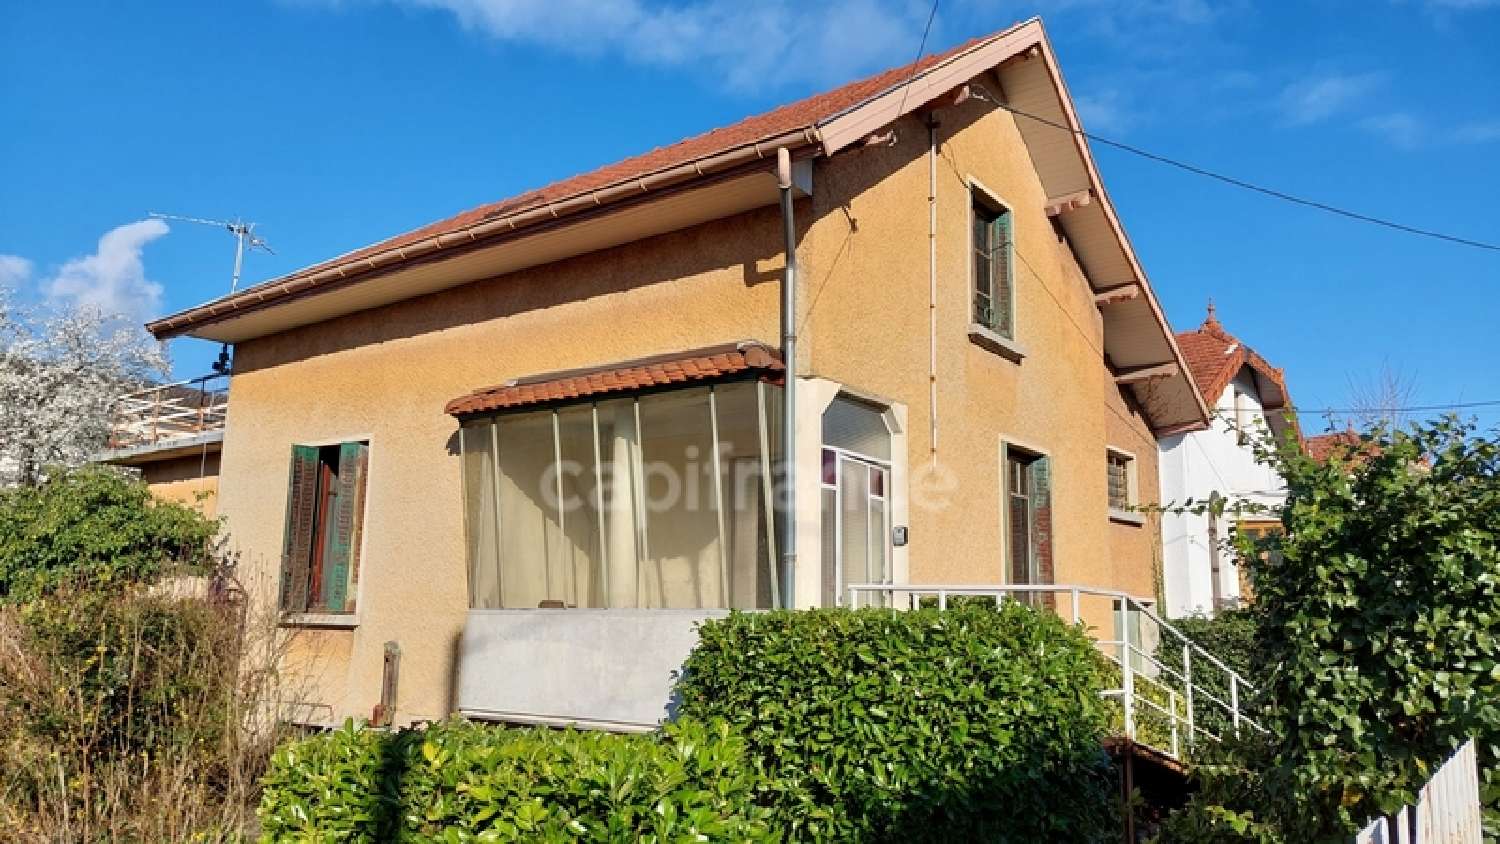  à vendre maison Aix-les-Bains Savoie 1